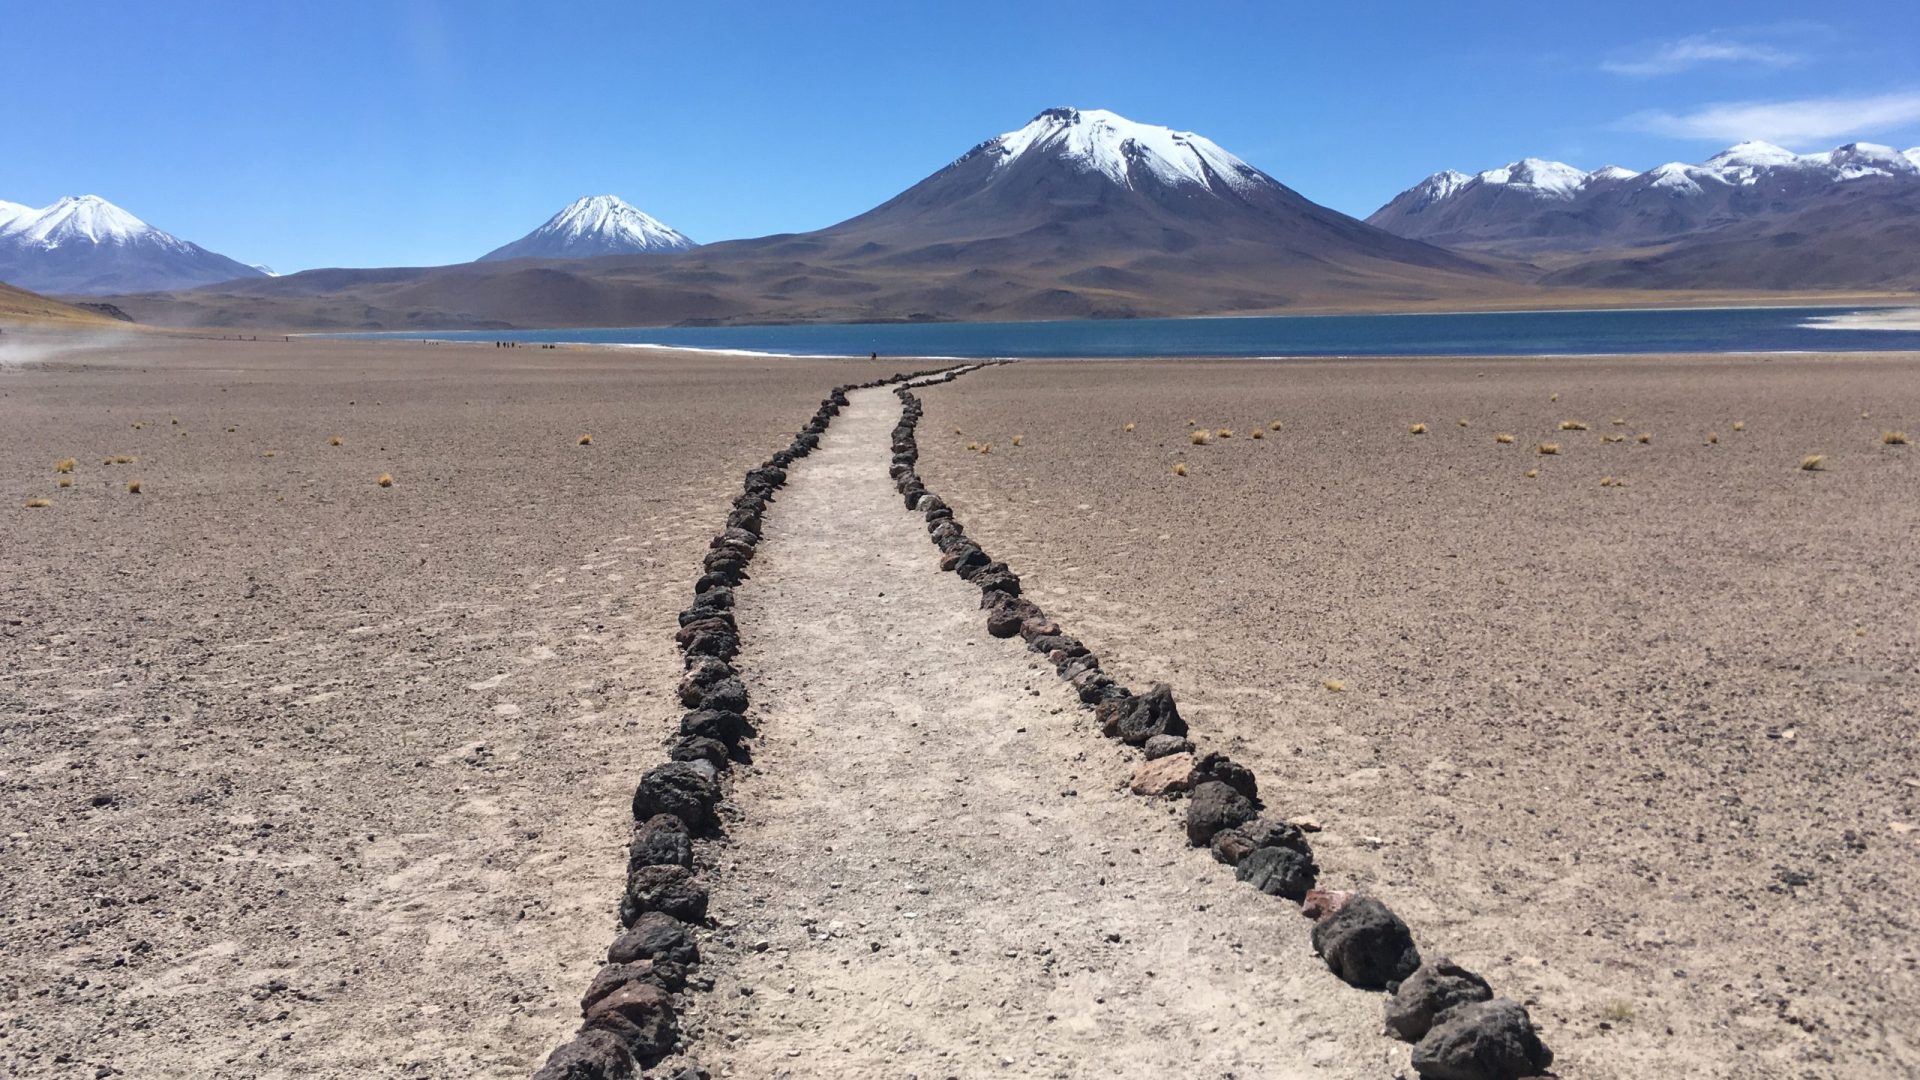 As paisagens no Deserto do Atacama são muito diferenciadas - Foto: Reprodução/Canva